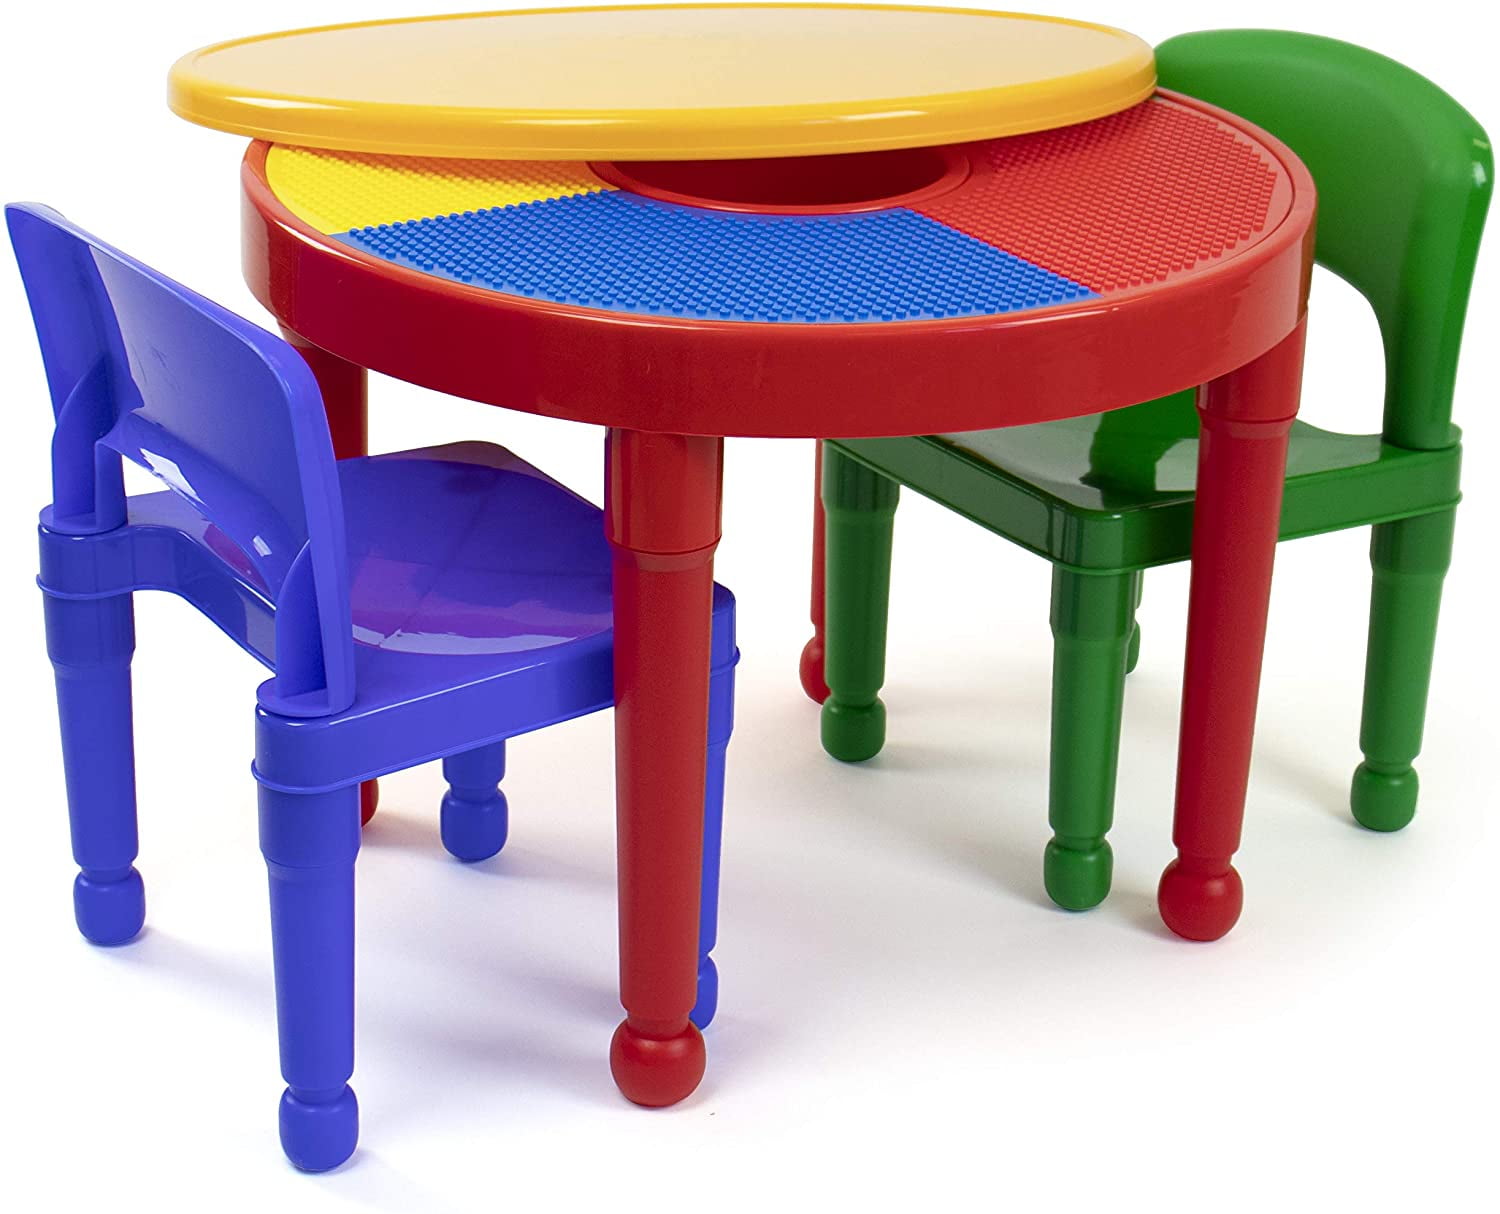 Details about   Kids Table w/ 2 Chair Children Activity Art Table Detachable Storage Bins Aqua 